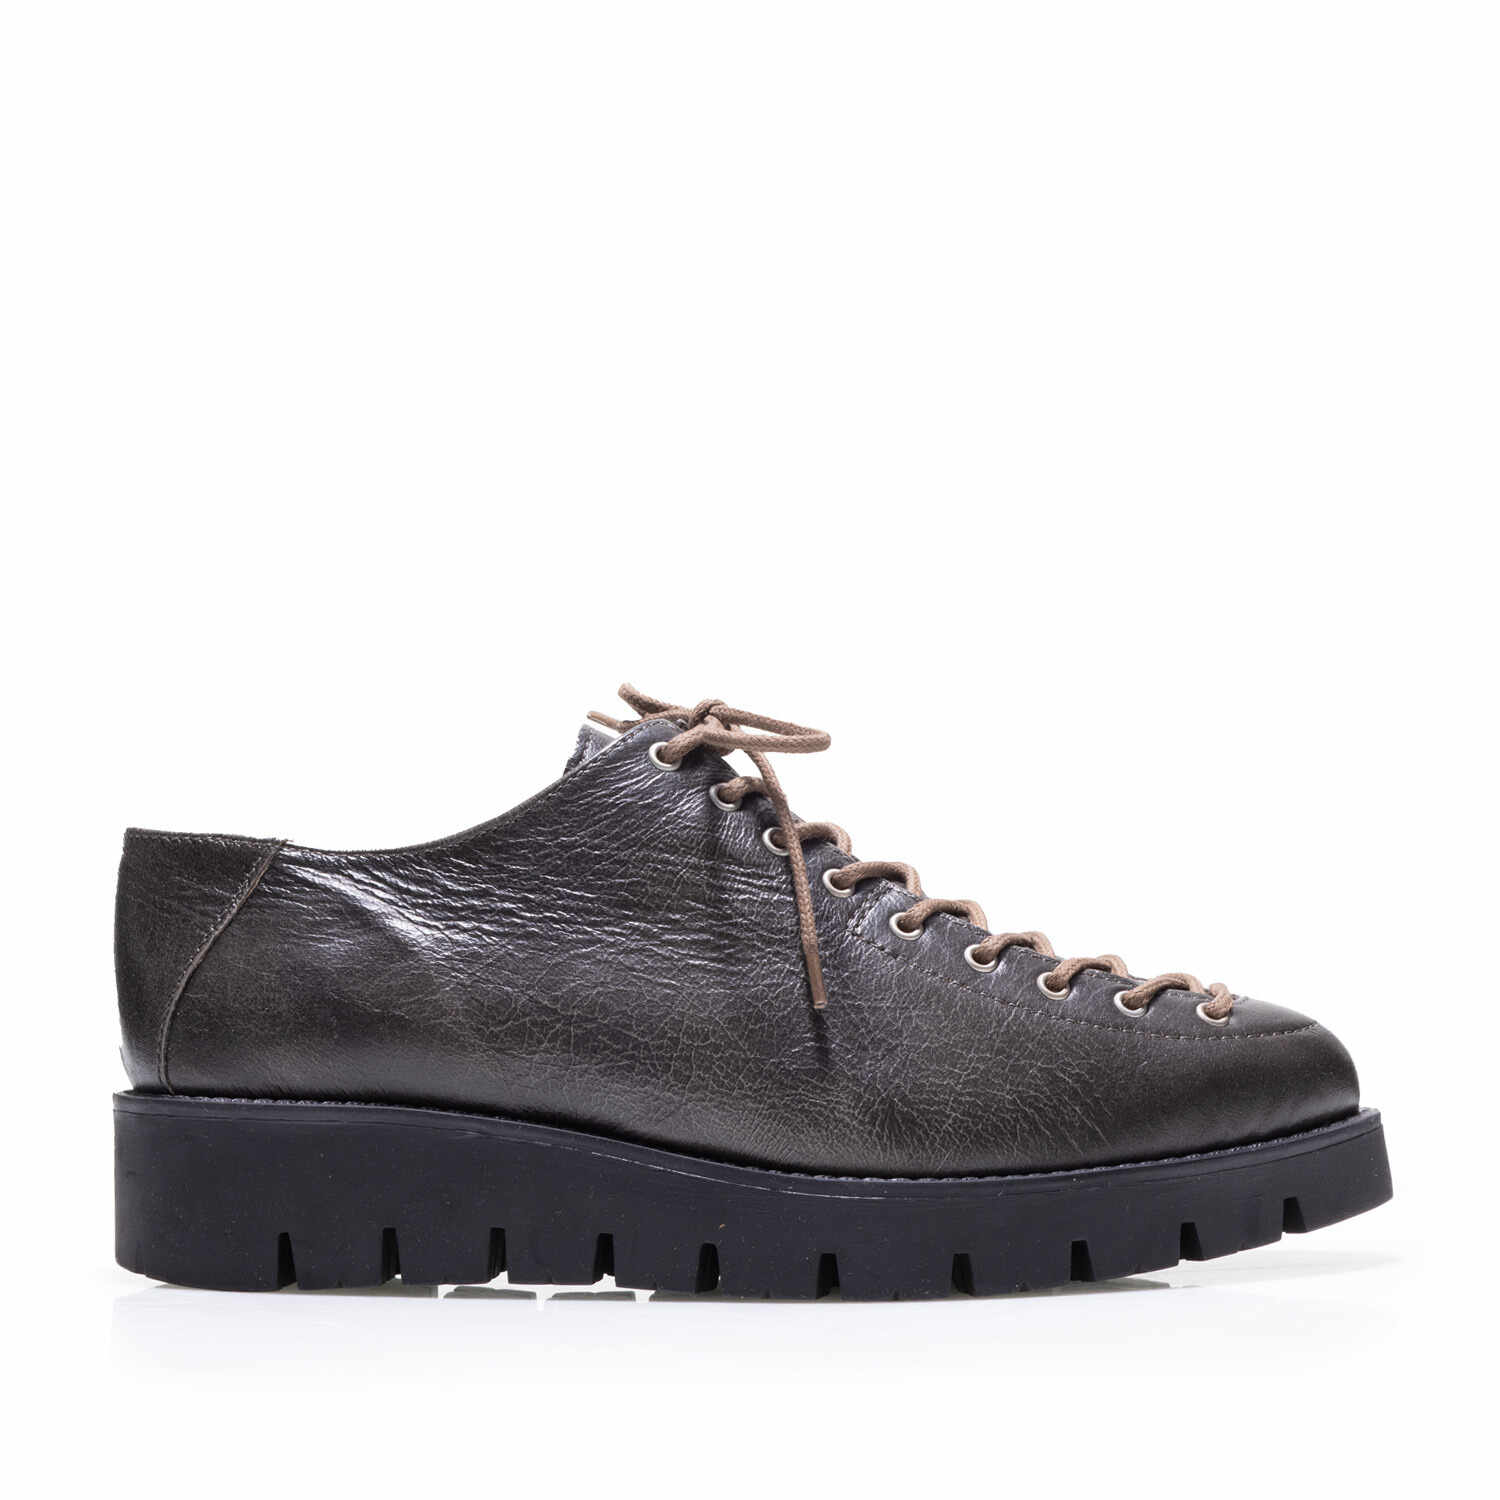 Pantofi casual damă cu șiret până în vârf din piele naturală, Leofex - Mostră 194 Gri Box